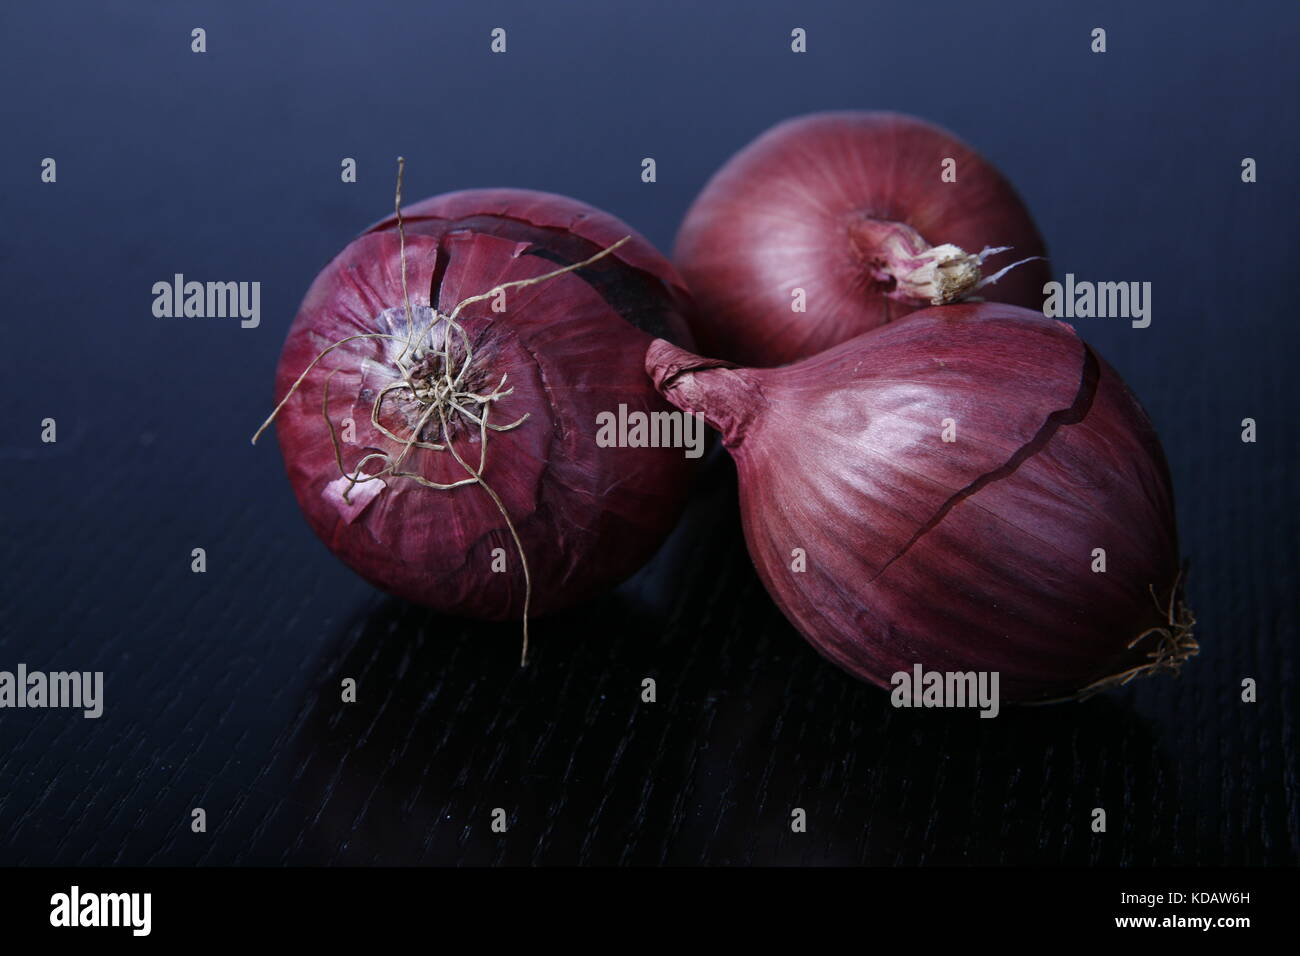 drei Rote Zwiebeln auf schwarzem Tisch - three red onions on black table Stock Photo